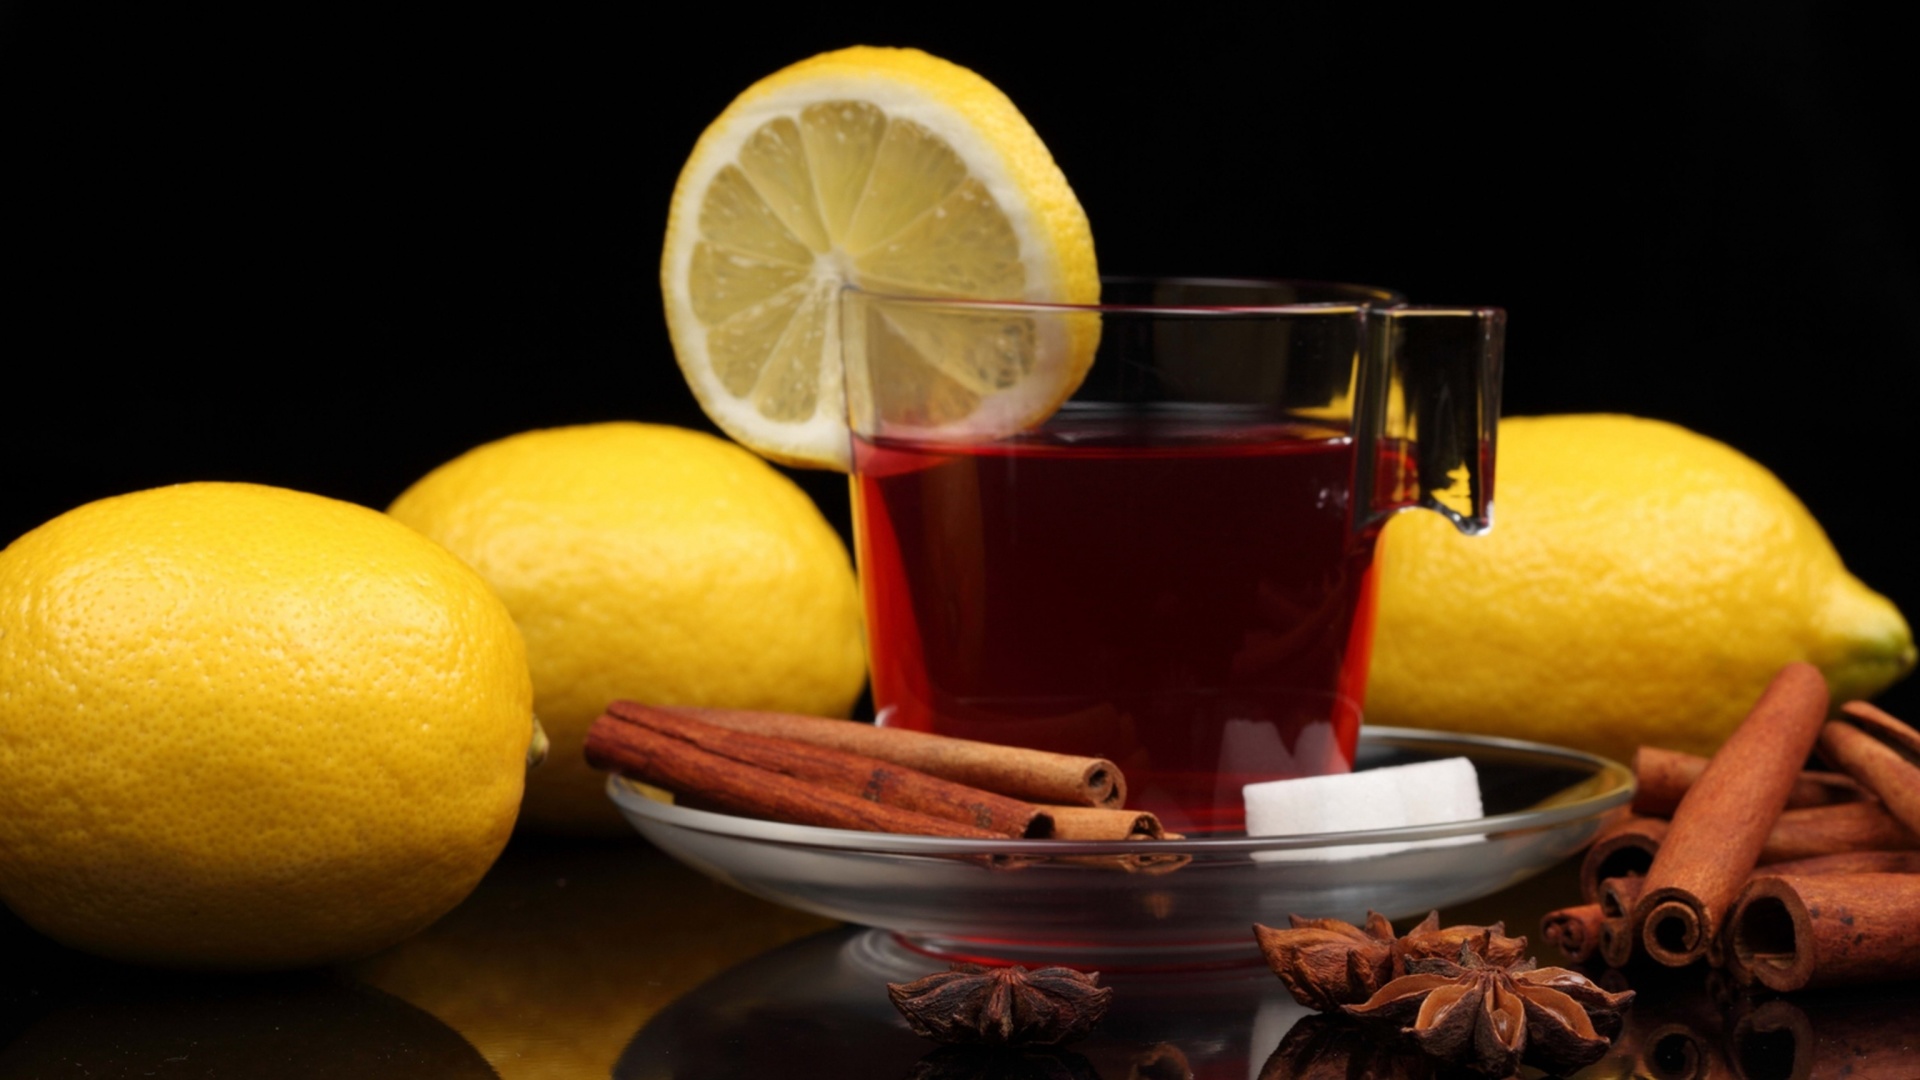 Tea with lemon and cinnamon screenshot #1 1920x1080